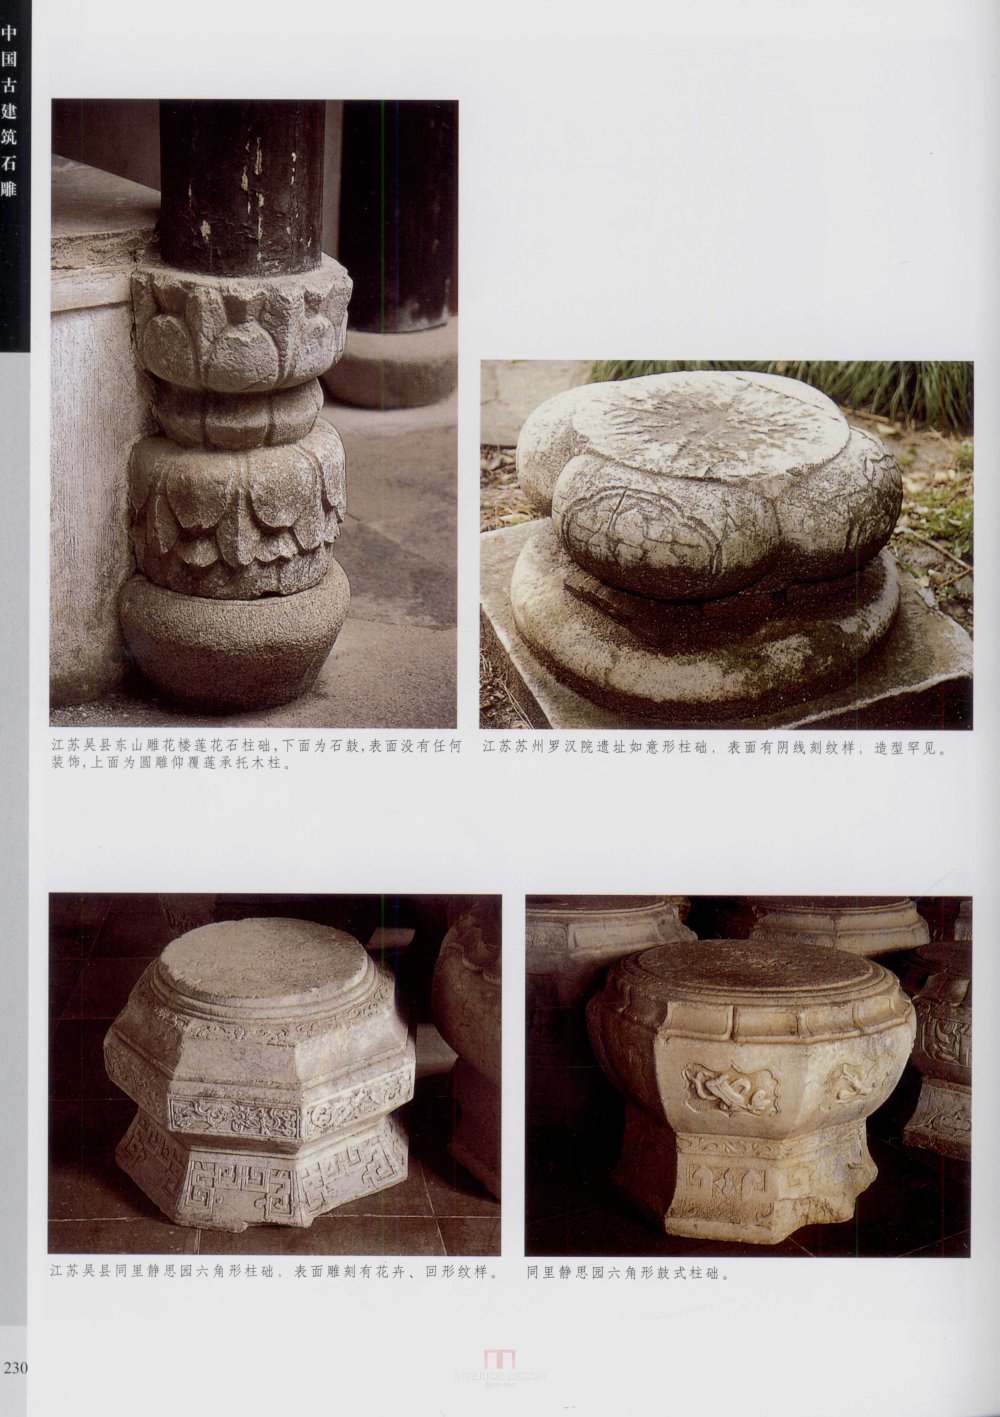 中国古代建筑 石雕_kobe 0237.jpg